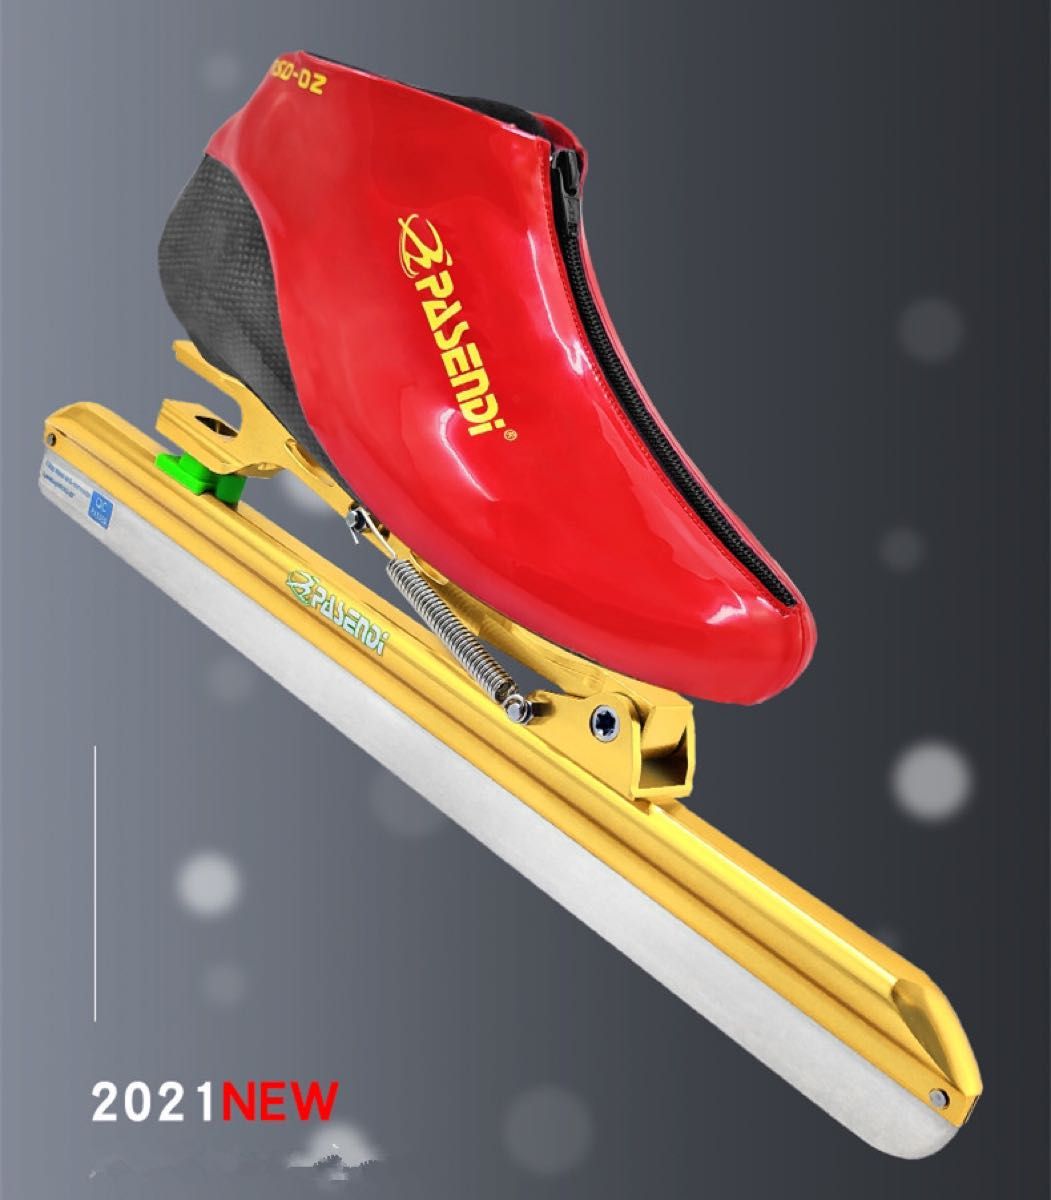 スピードスケート靴 ノーマル スケート 靴 マイクロファイバー カーボン構造 ブレードタイプ スラップ ブラックエッジカバー付き